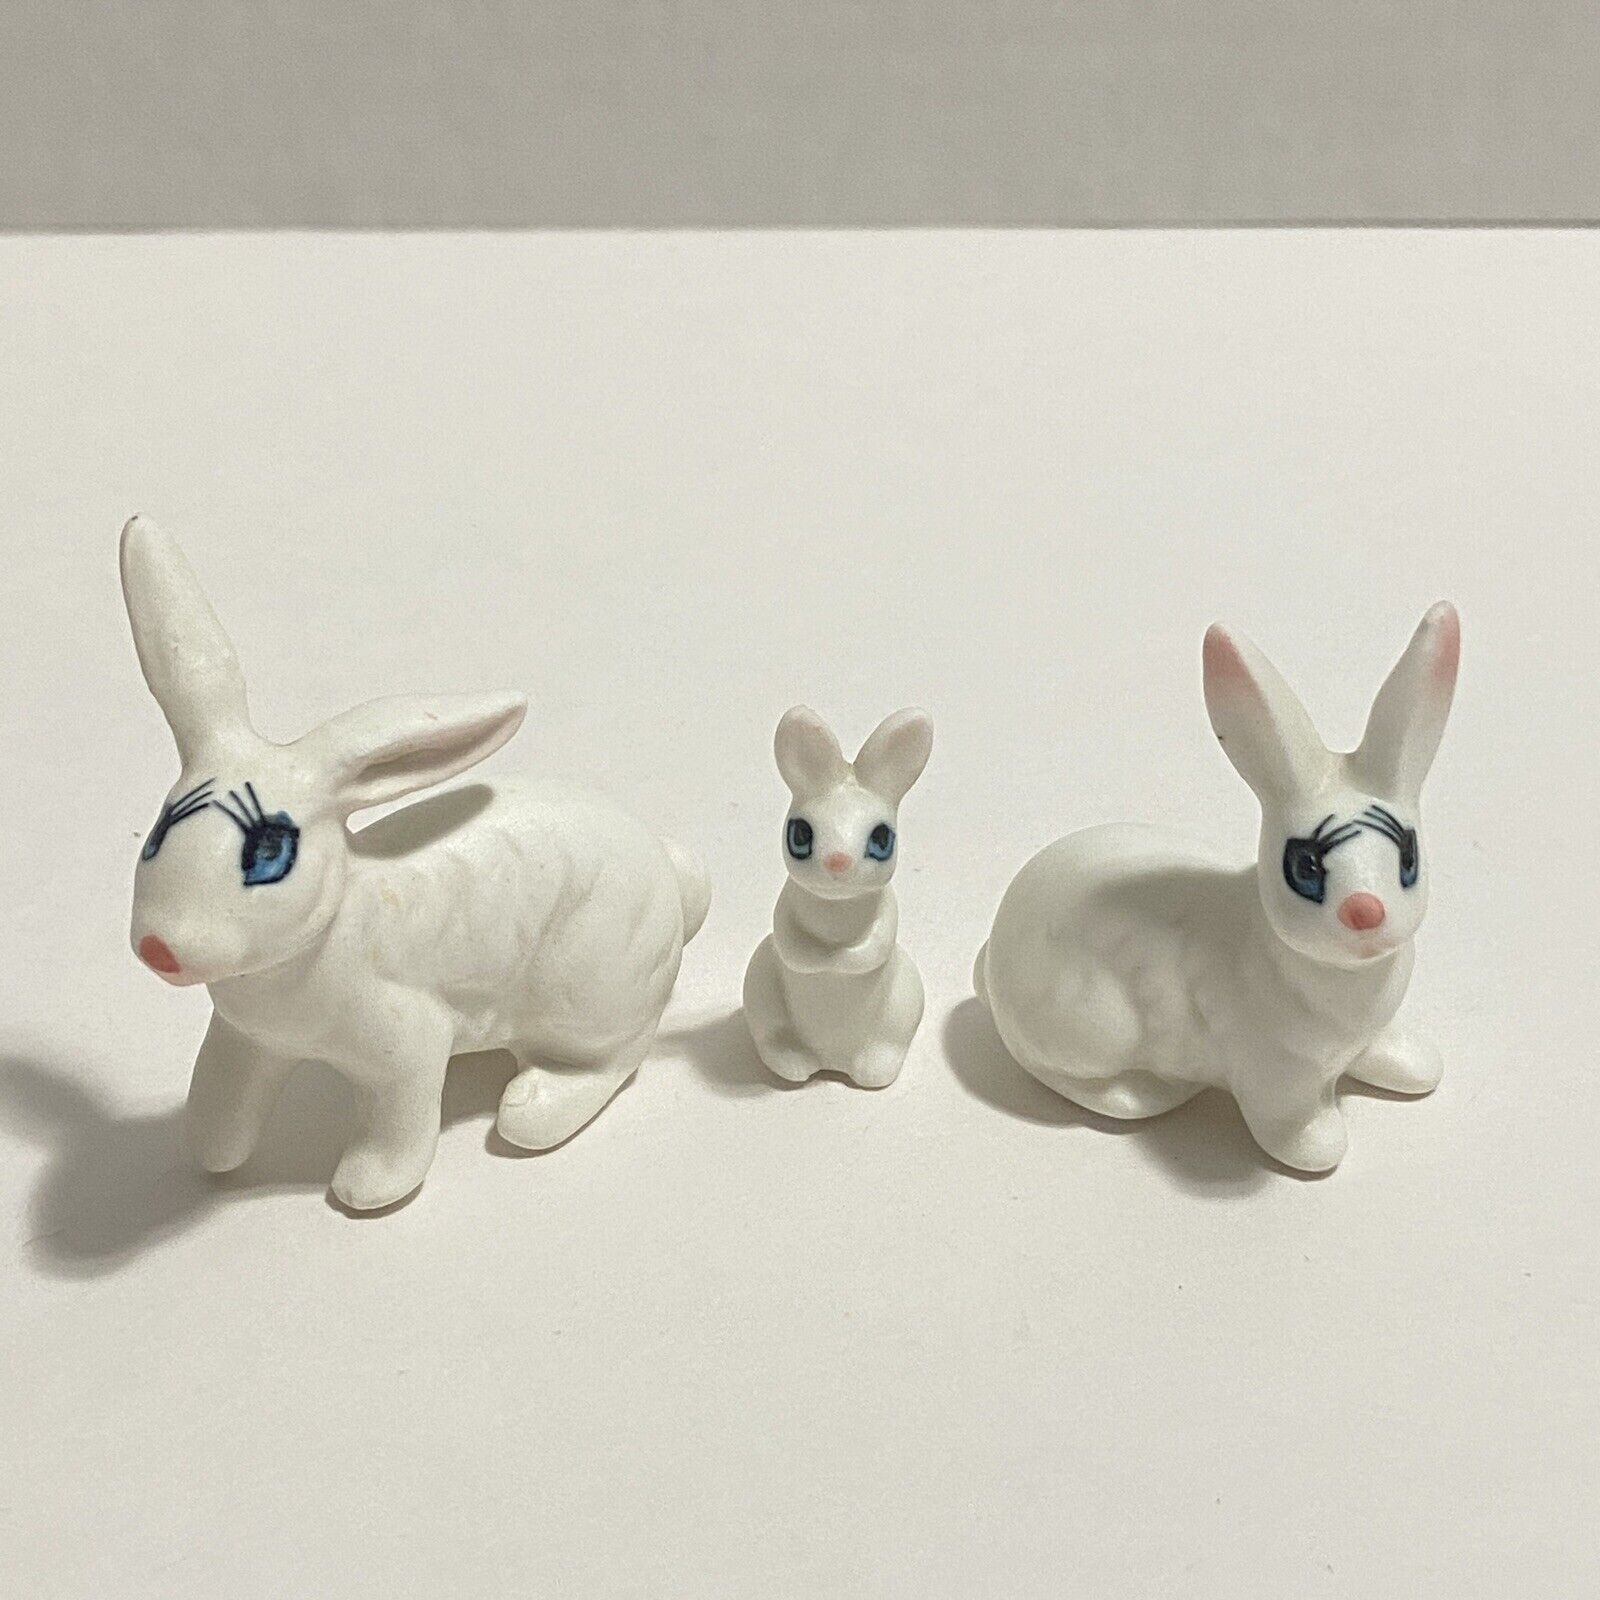 Vintage Miniature Bunny Rabbit Family Set of 3 Figurines Blue Eyes w/ Eyelashes